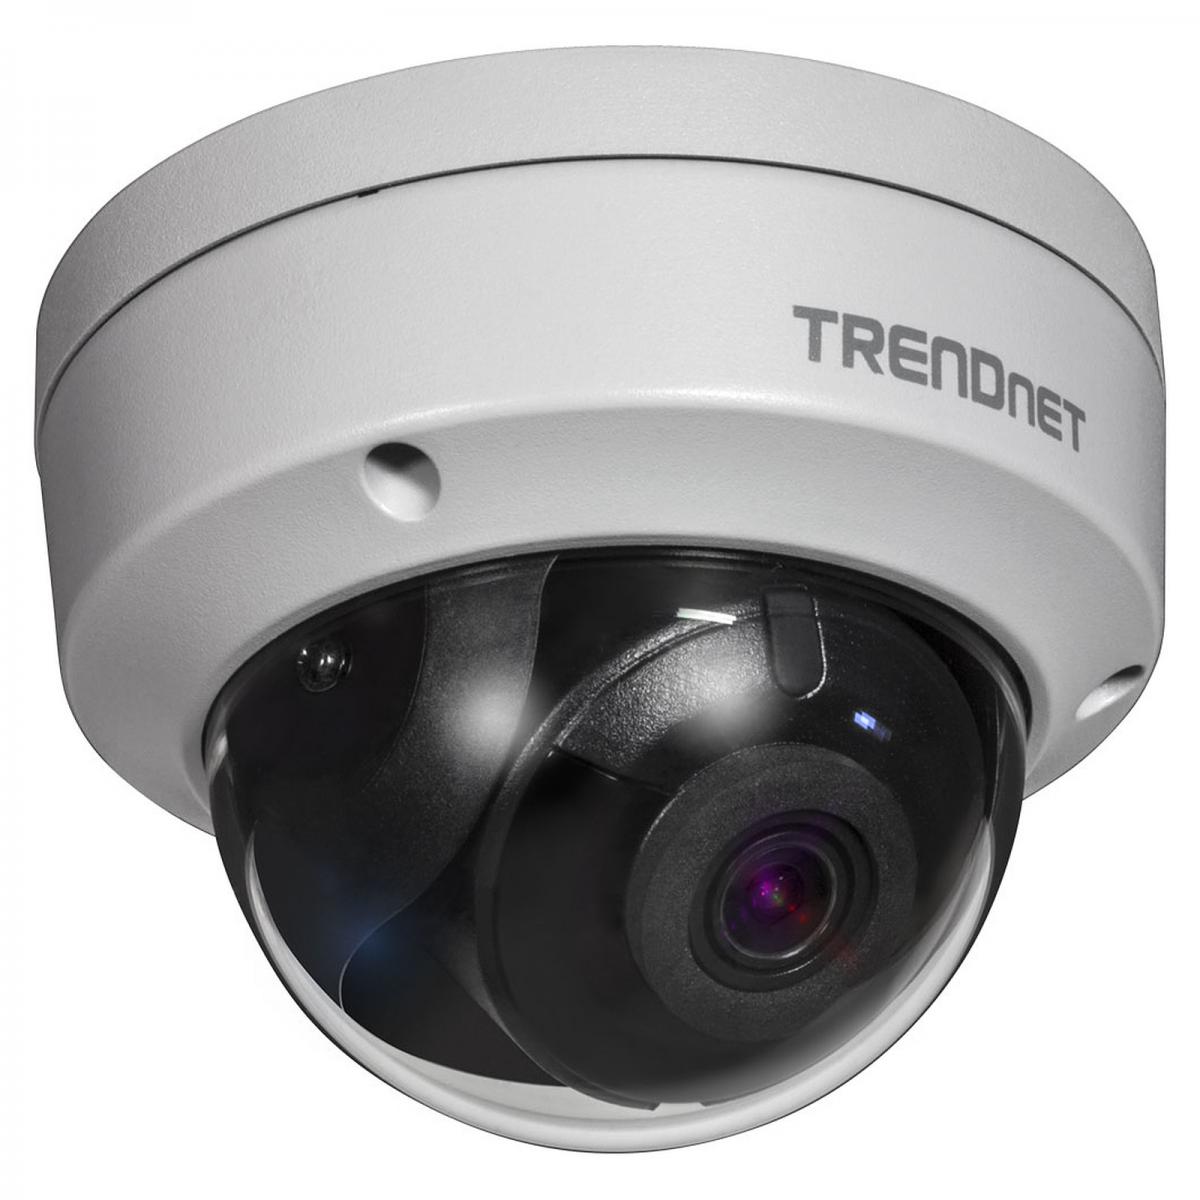 Trendnet - TRENDNET TV-IP1315PI - Caméra de surveillance connectée